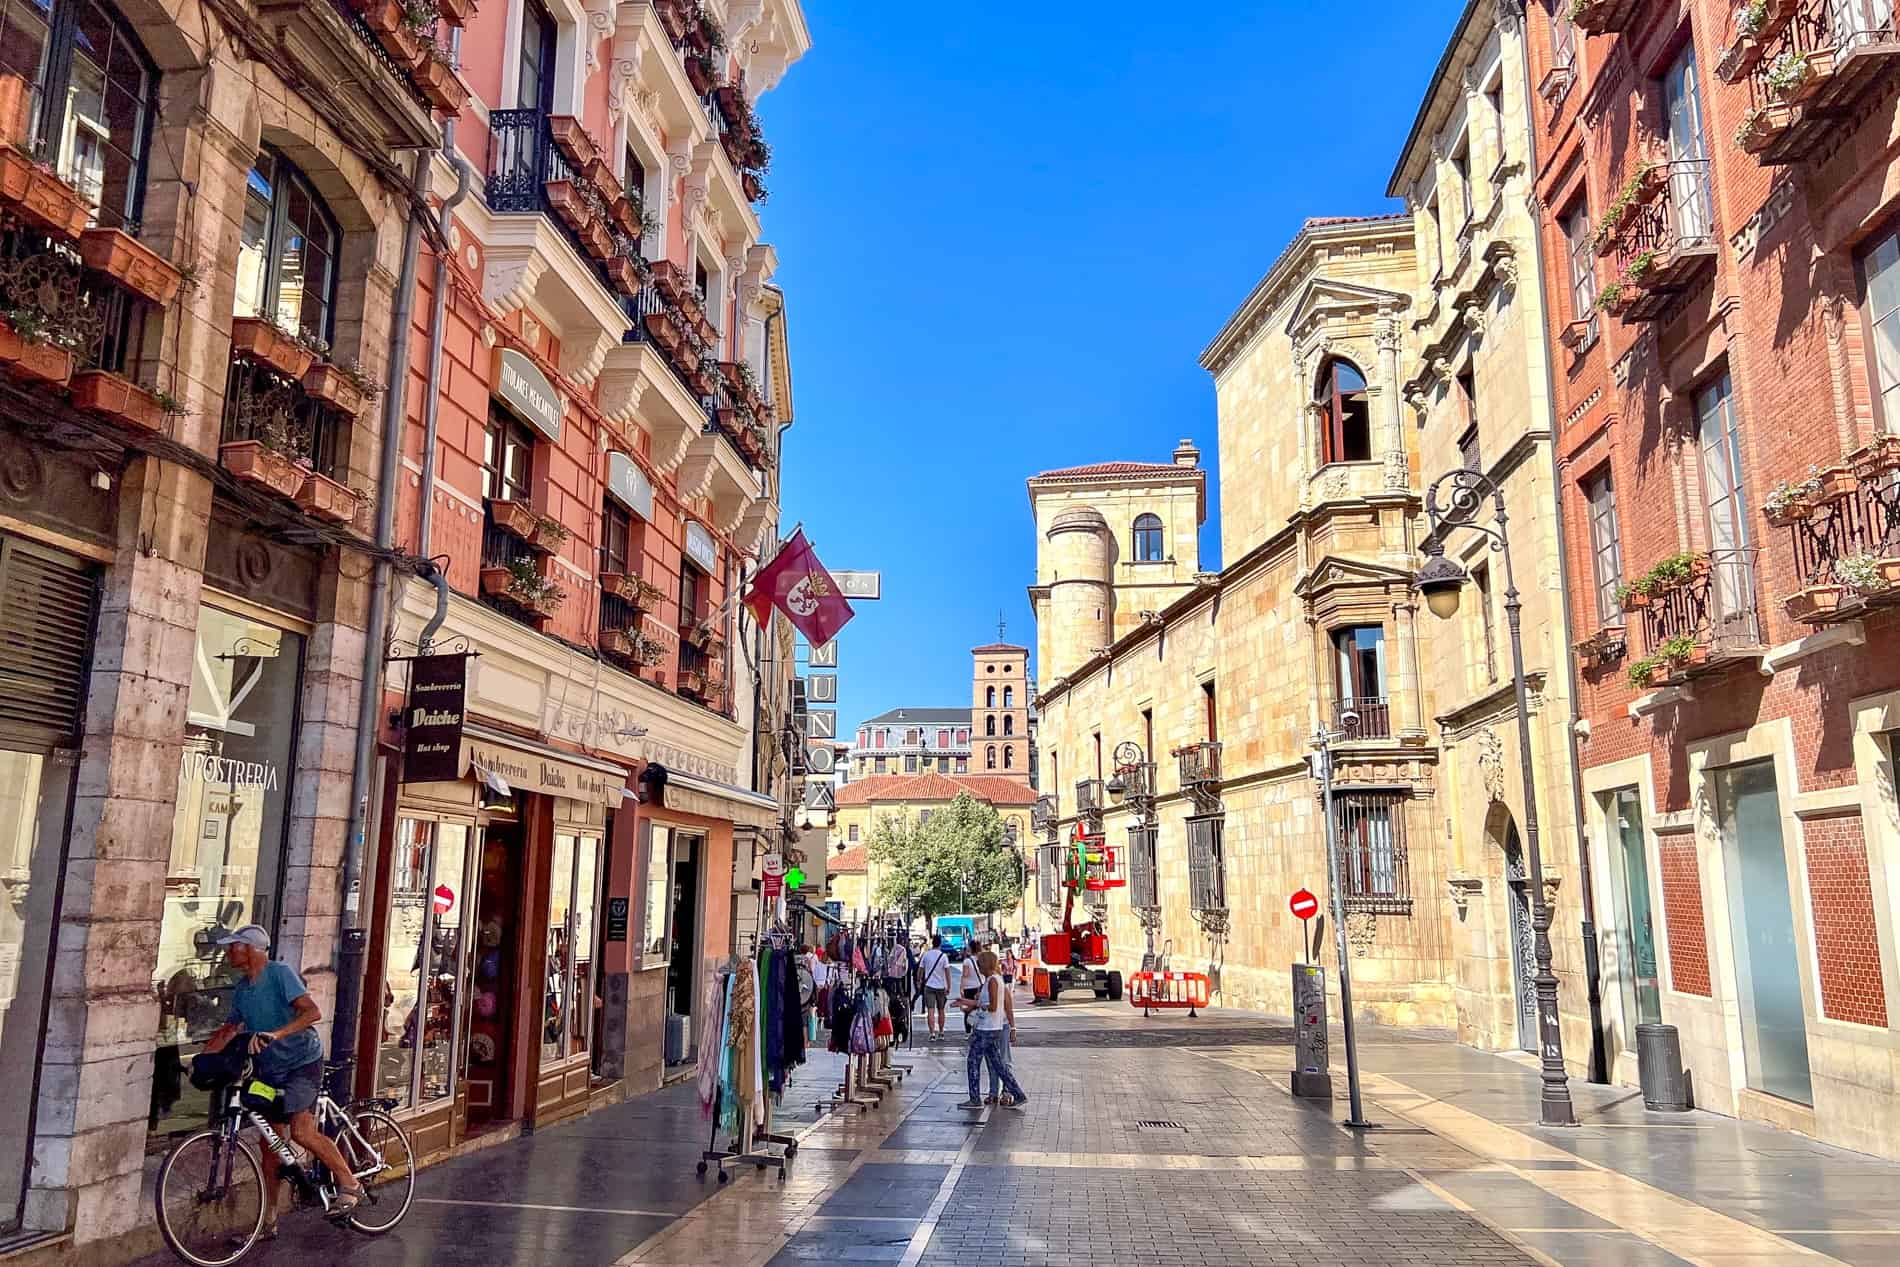 Edificios amarillos y rojos ocres en una calle principal de la ciudad de León España.